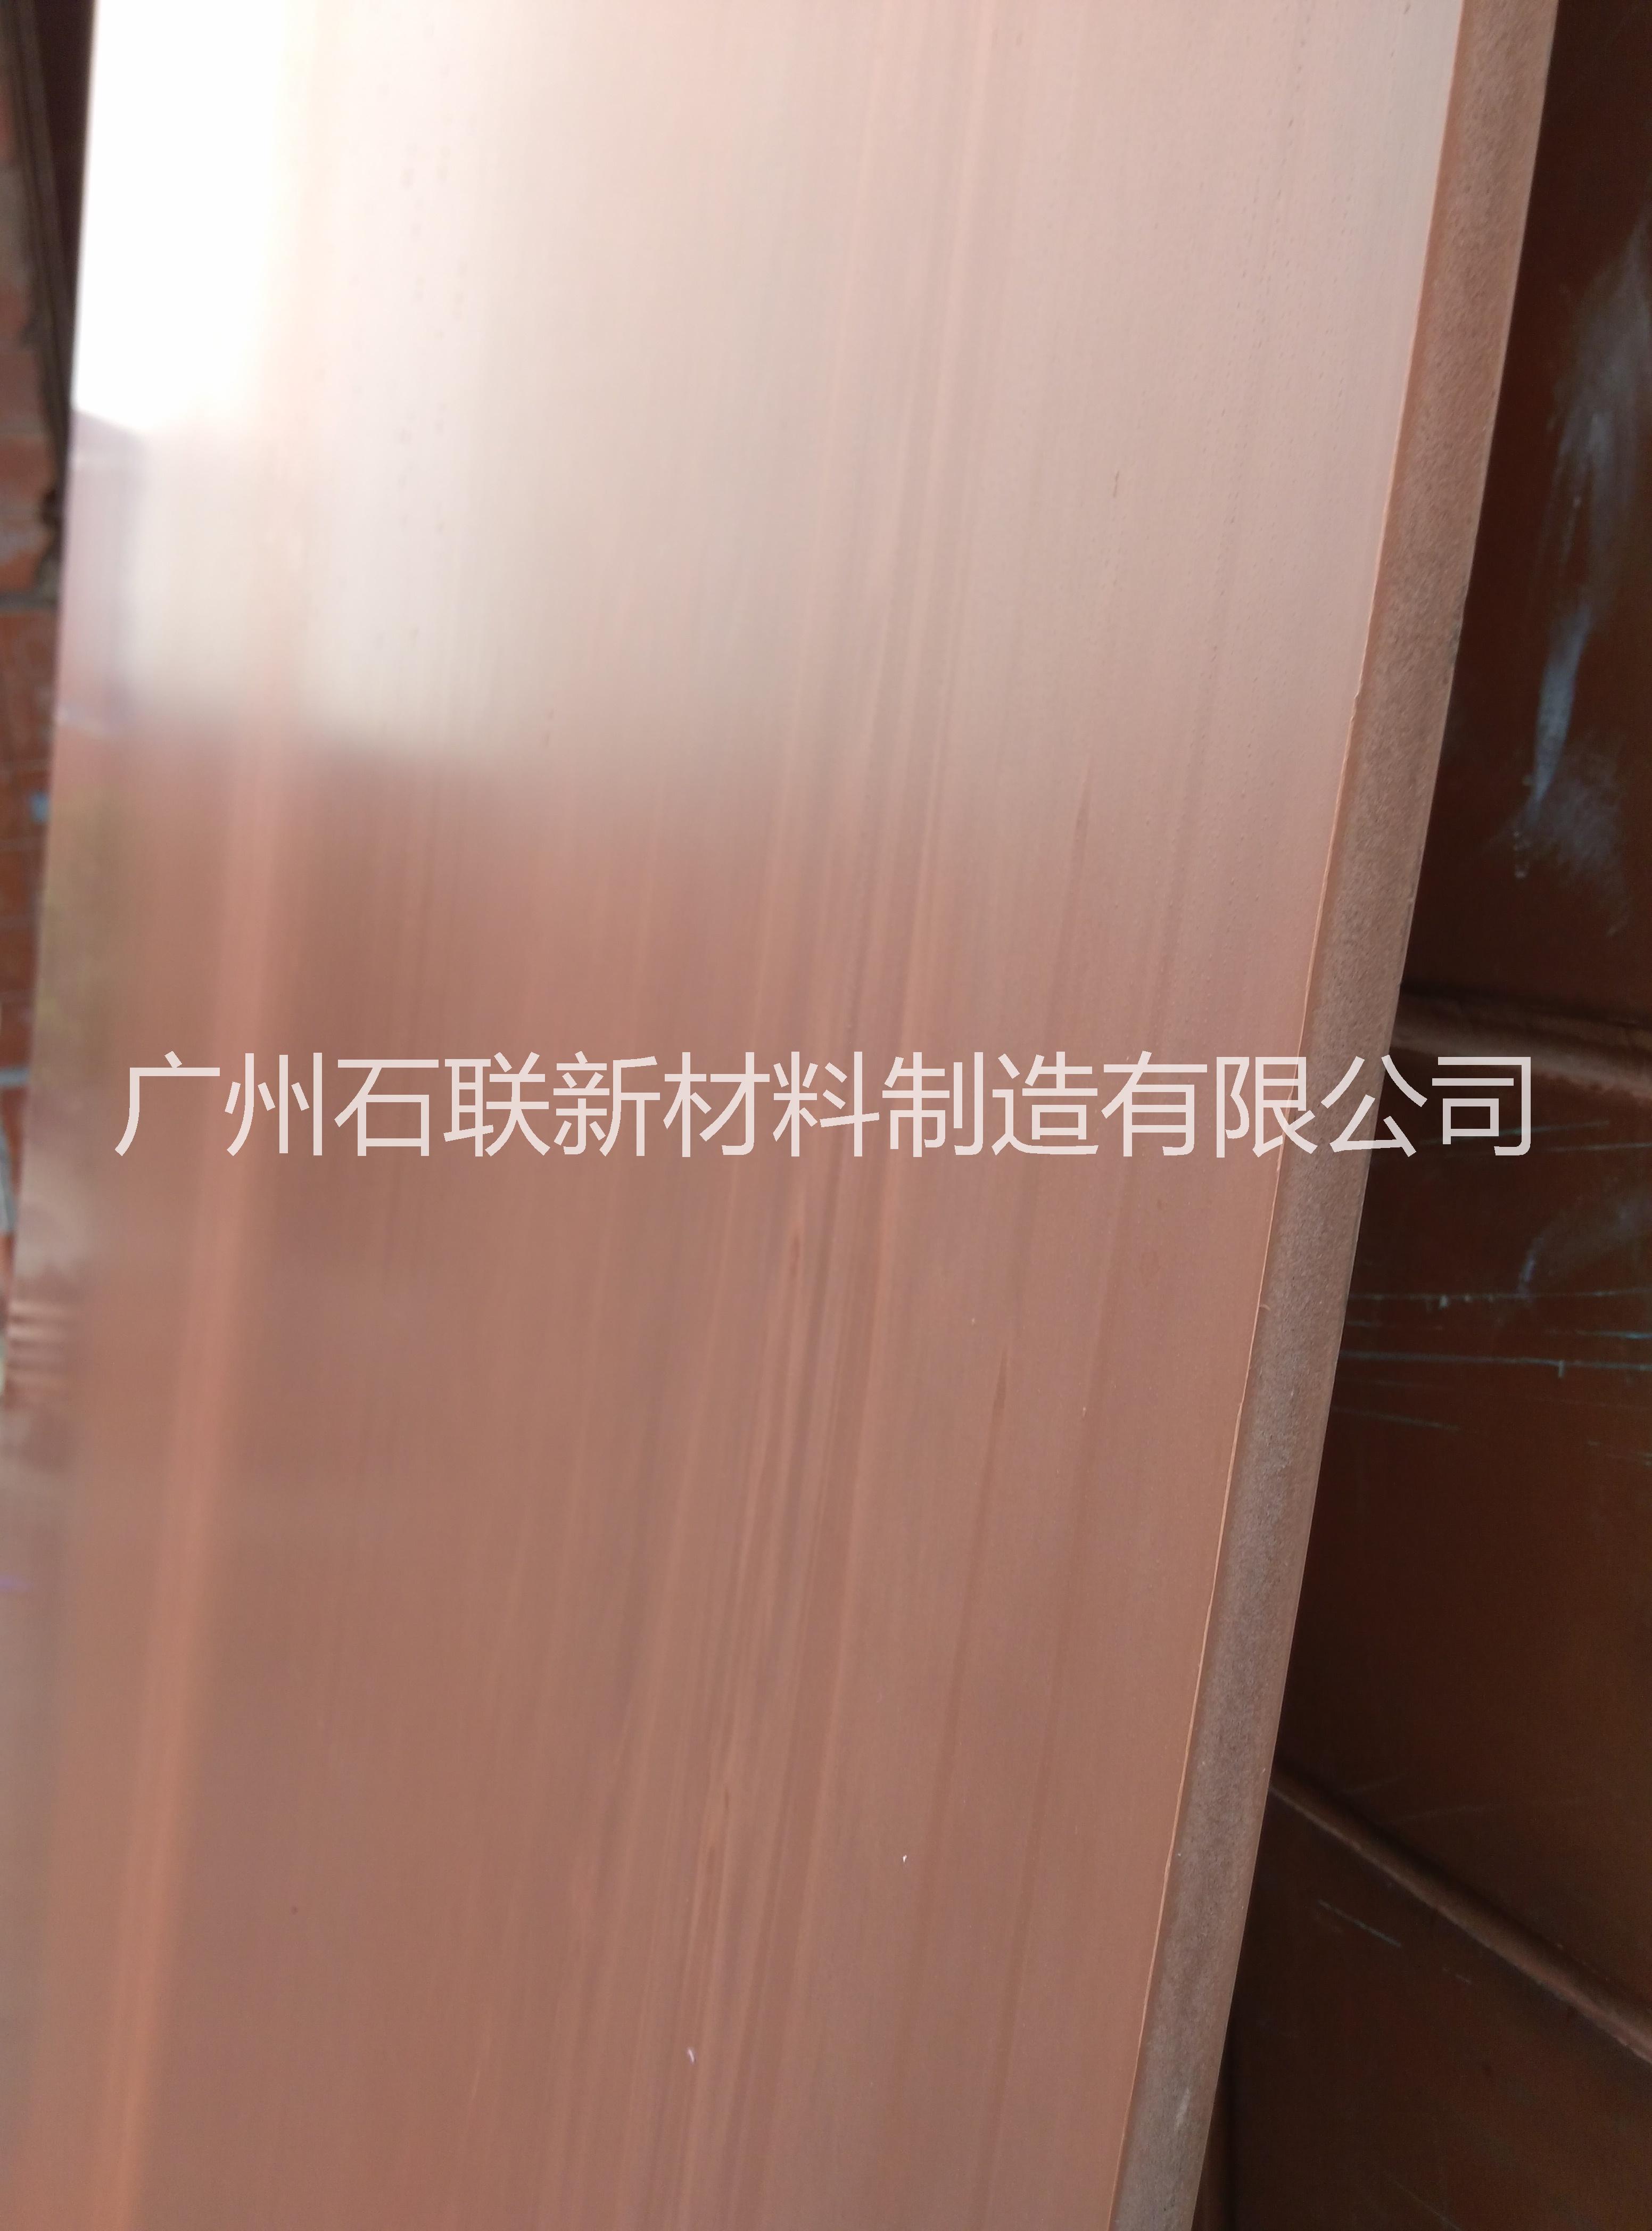 PVC板材 发泡板 木色木纹定做批发